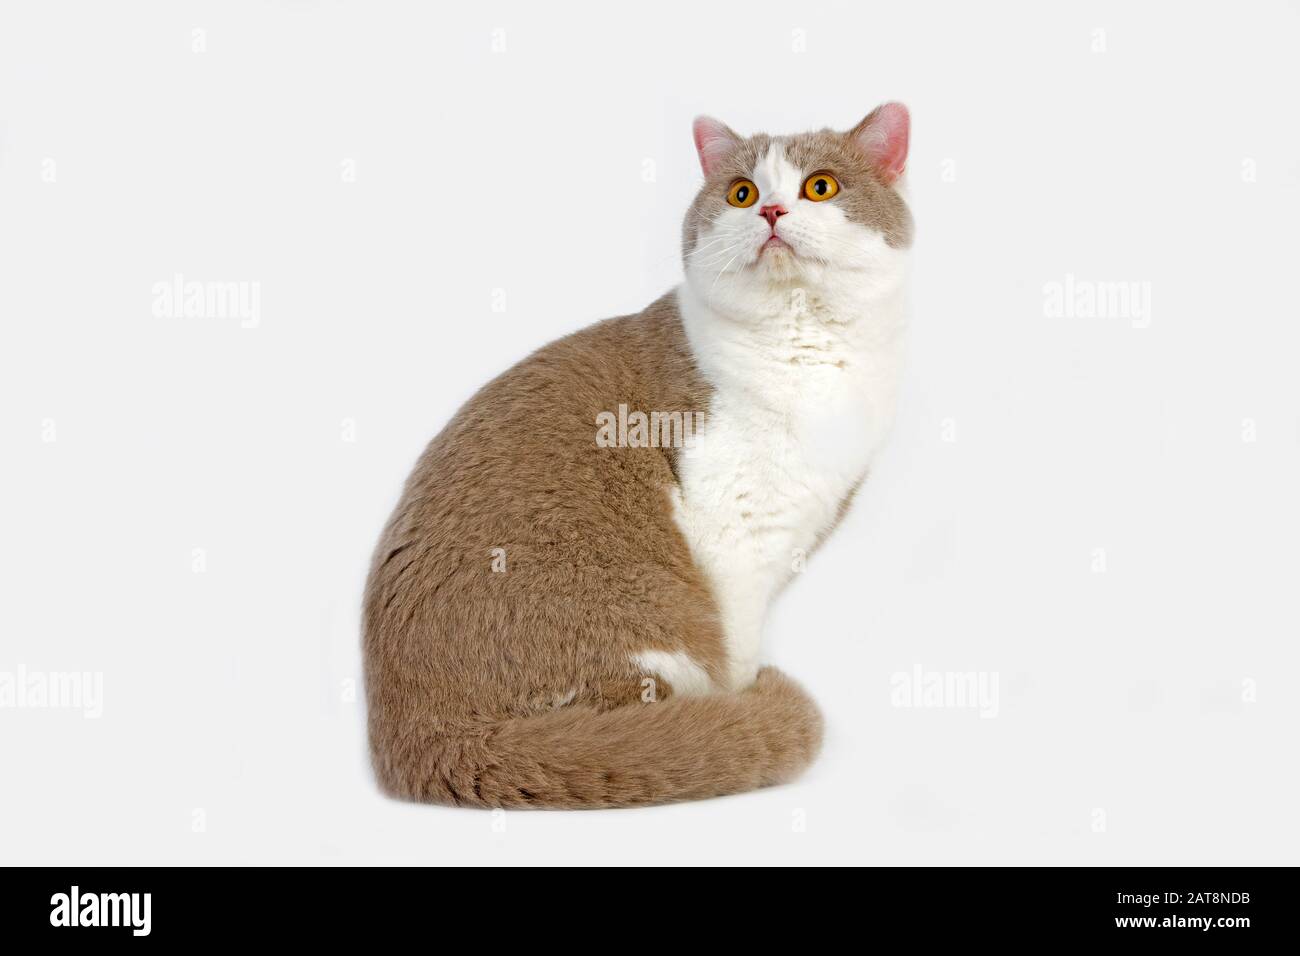 Lilla e Bianco British Shorthair gatto domestico, maschio contro uno sfondo bianco Foto Stock